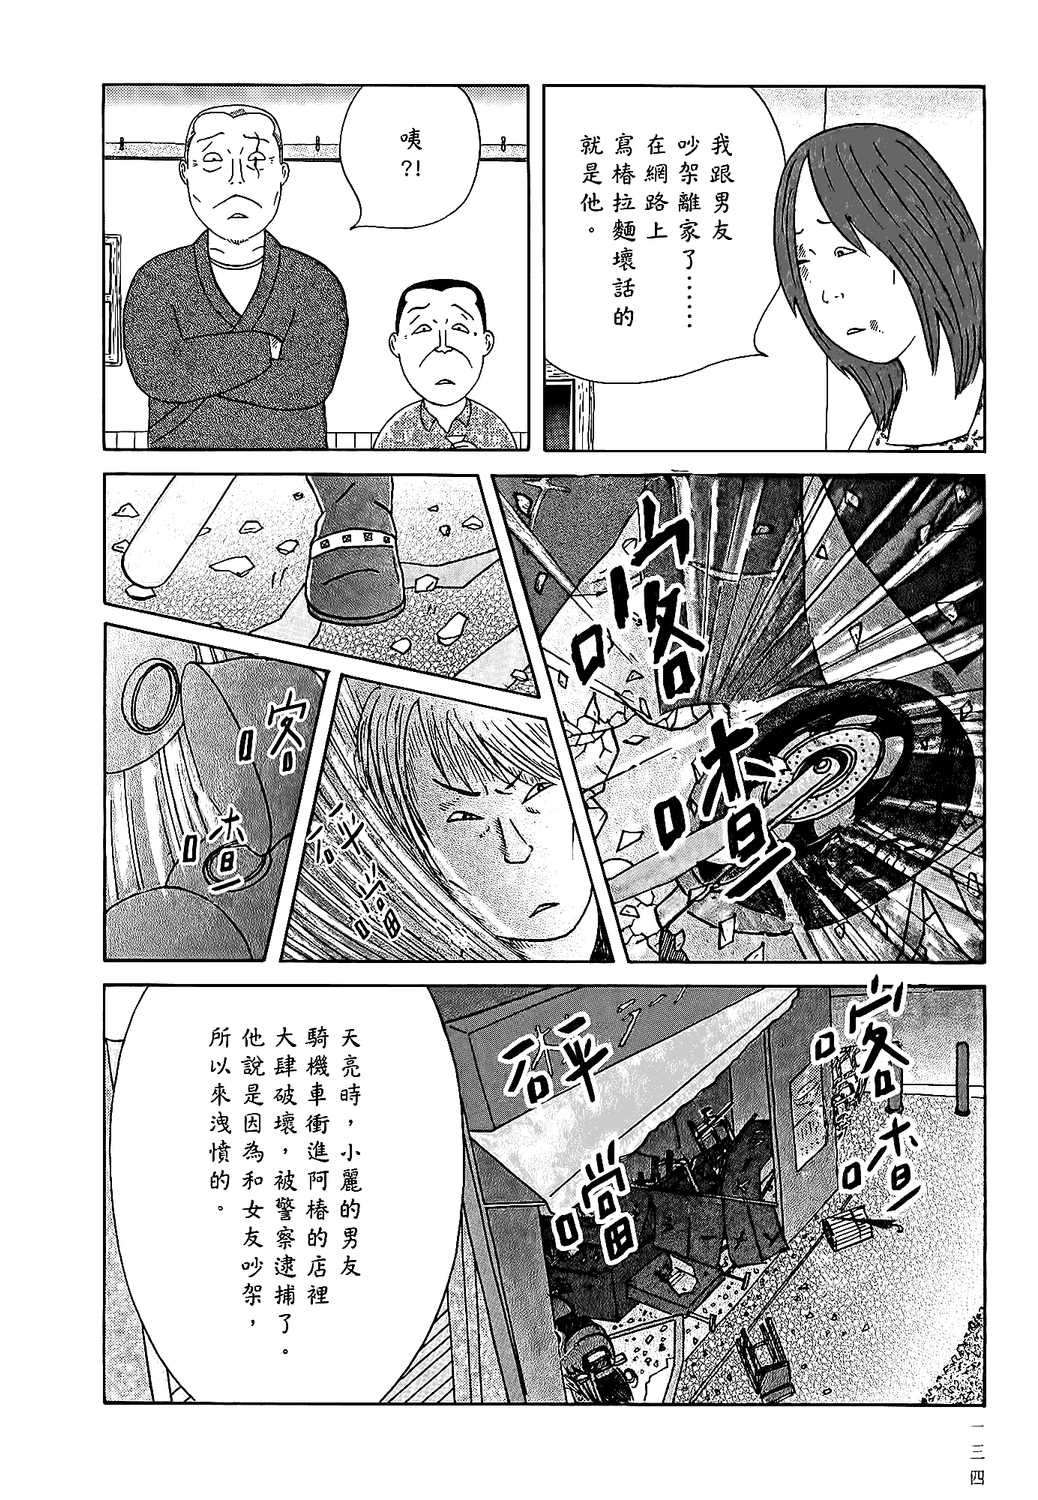 深夜食堂漫画单行本第15集 漫画db